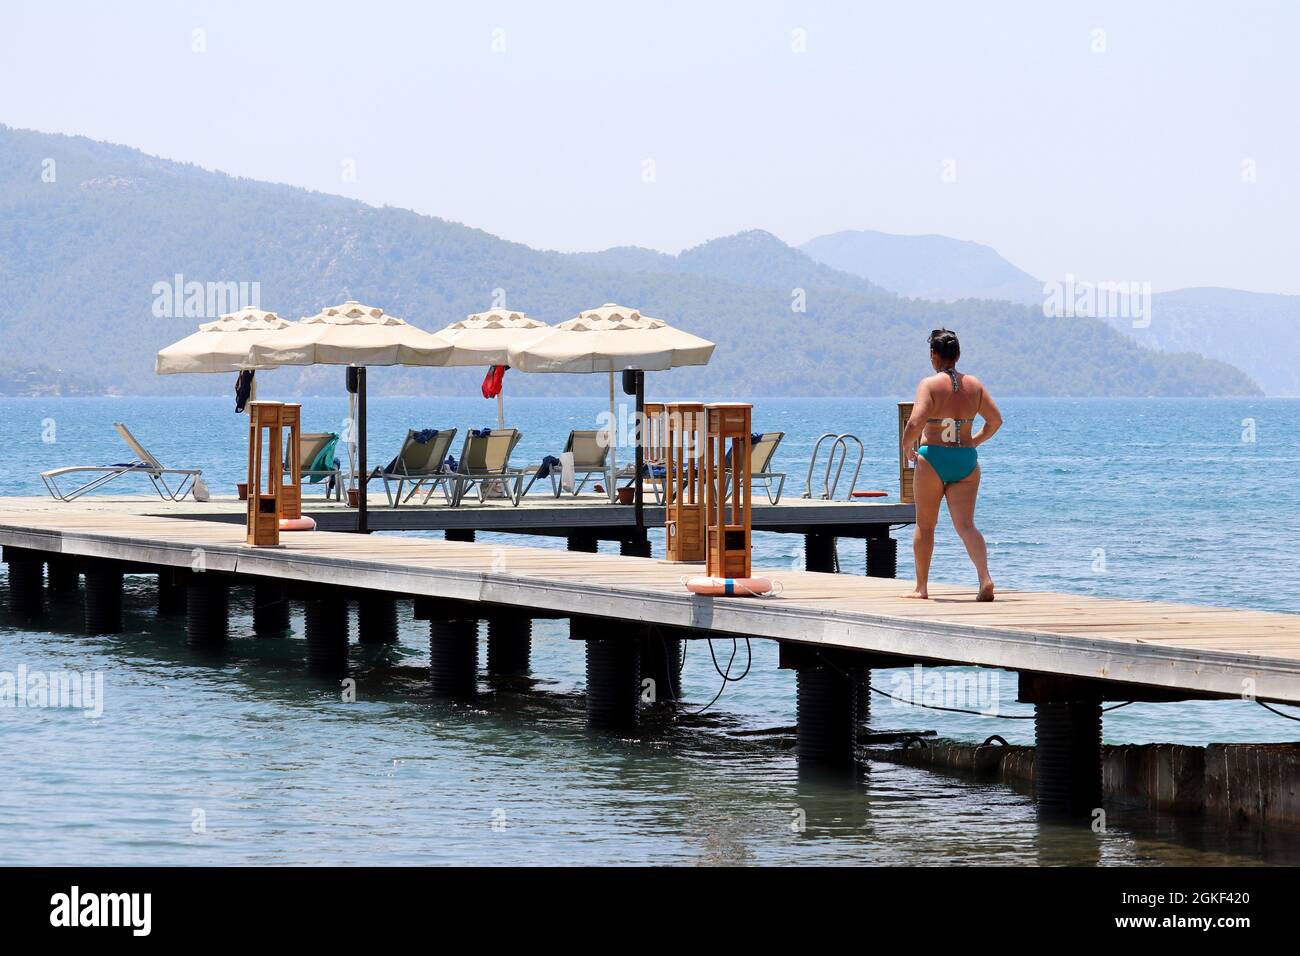 Strandurlaub im Seebad, Frau im Badeanzug, die mit Liegestühlen und Sonnenschirmen auf dem Pier spazierengeht. Landschaftlich schöner Blick auf die grüne Berginsel im Nebel Stockfoto